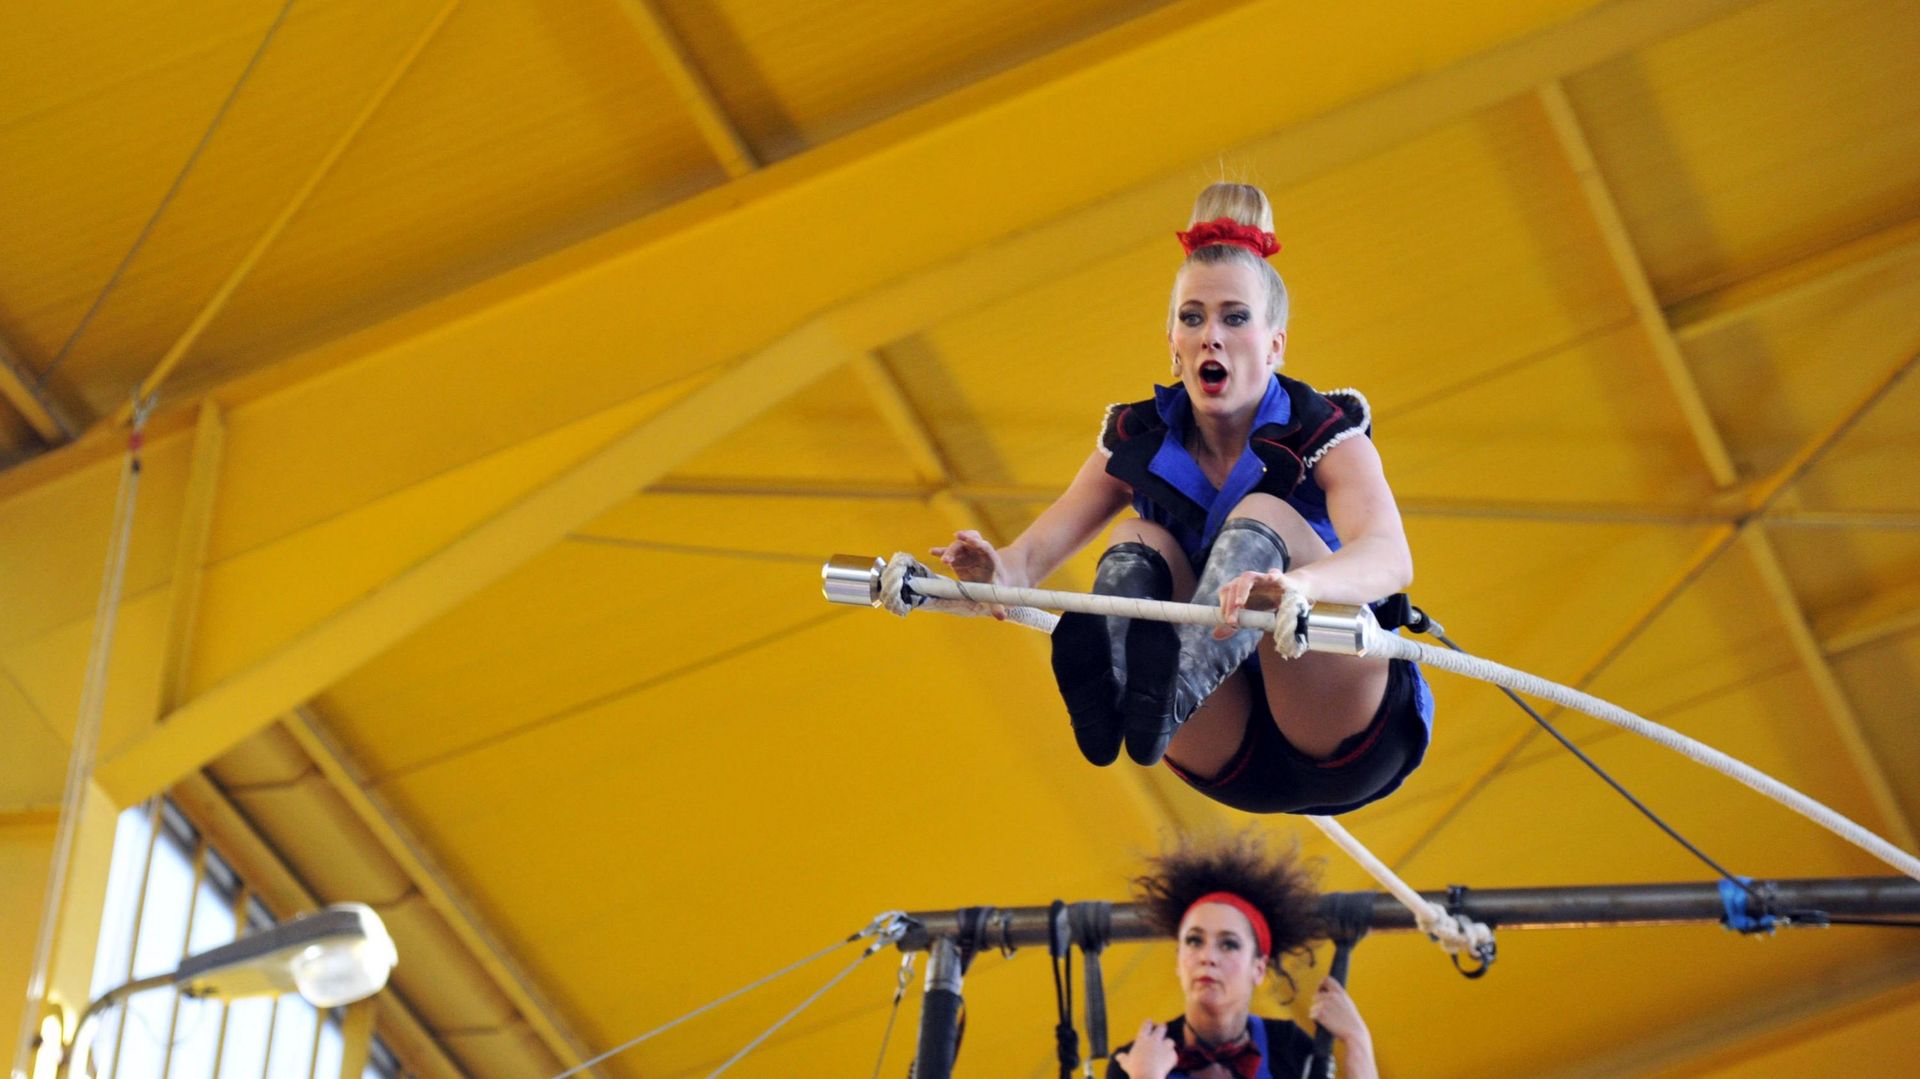 Le festival de cirque contemporain "EN L’AIR" revient pour la dixième édition dès ce 13 novembre